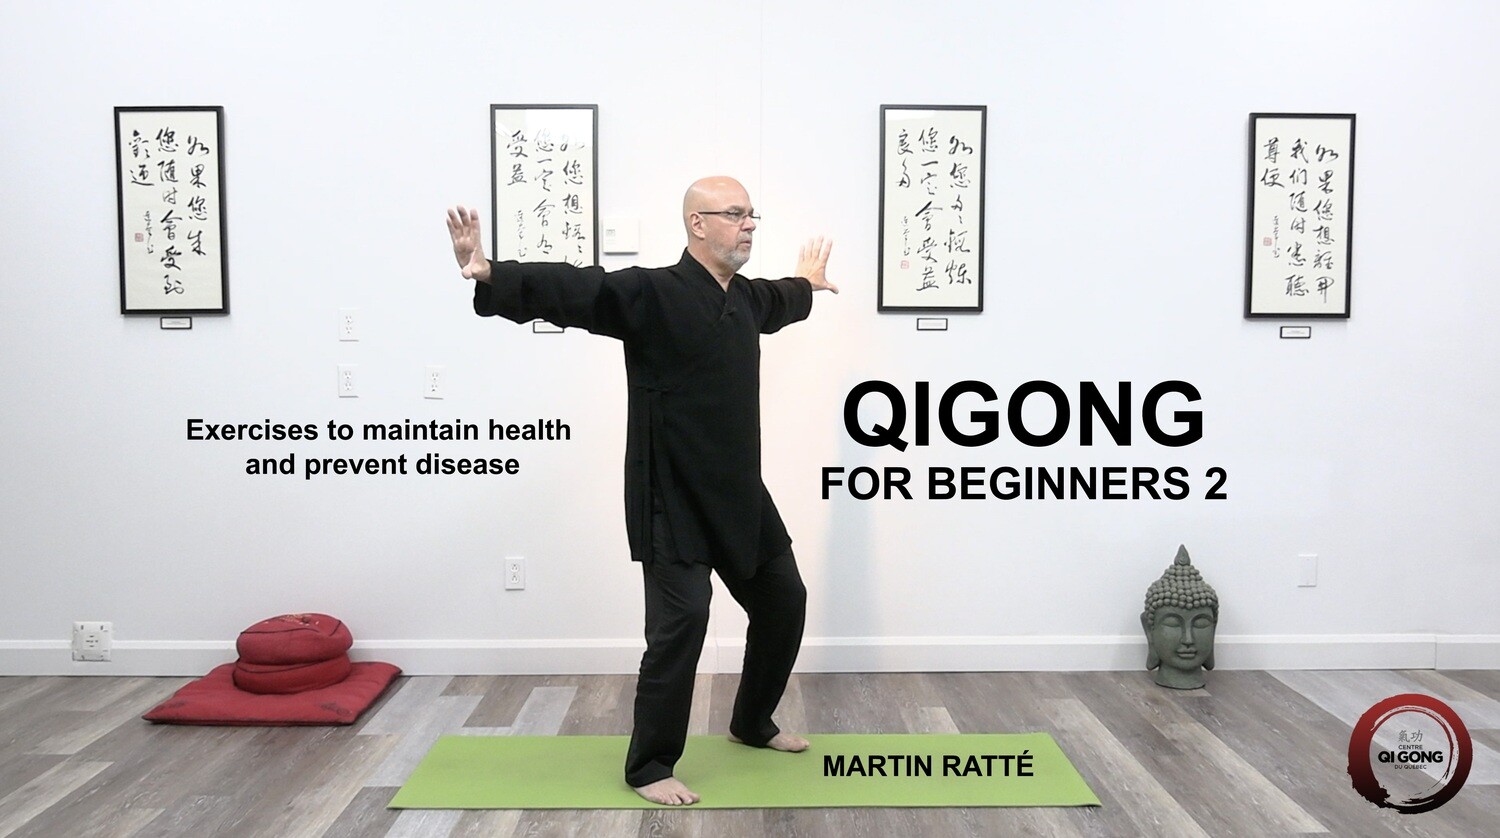 Qigong for beginners 2 (HD) English